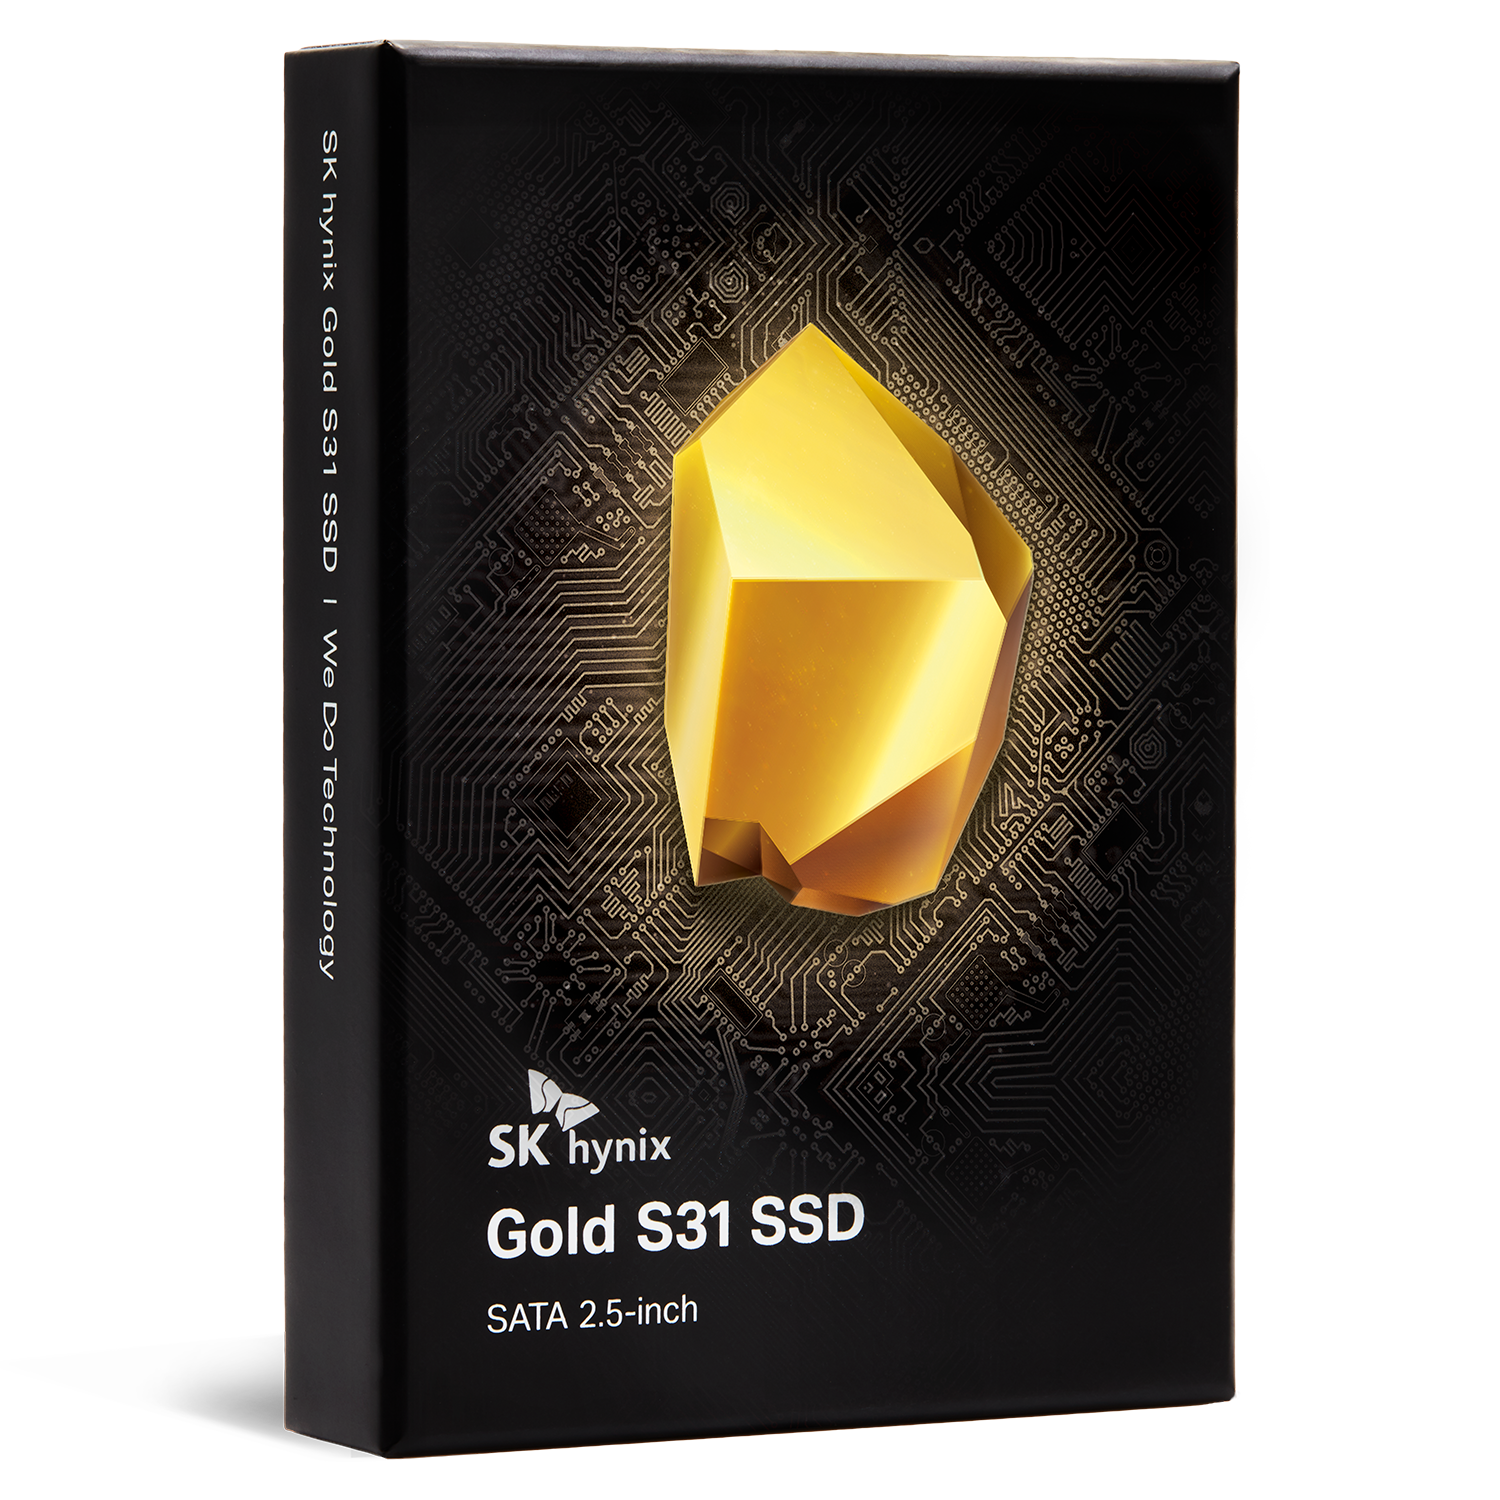 Immagine pubblicata in relazione al seguente contenuto: SK Hynix esordisce nel mercato consumer con gli SSD Gold S31 SATA III | Nome immagine: news29885_SK-Hynix-Gold-S31_2.png